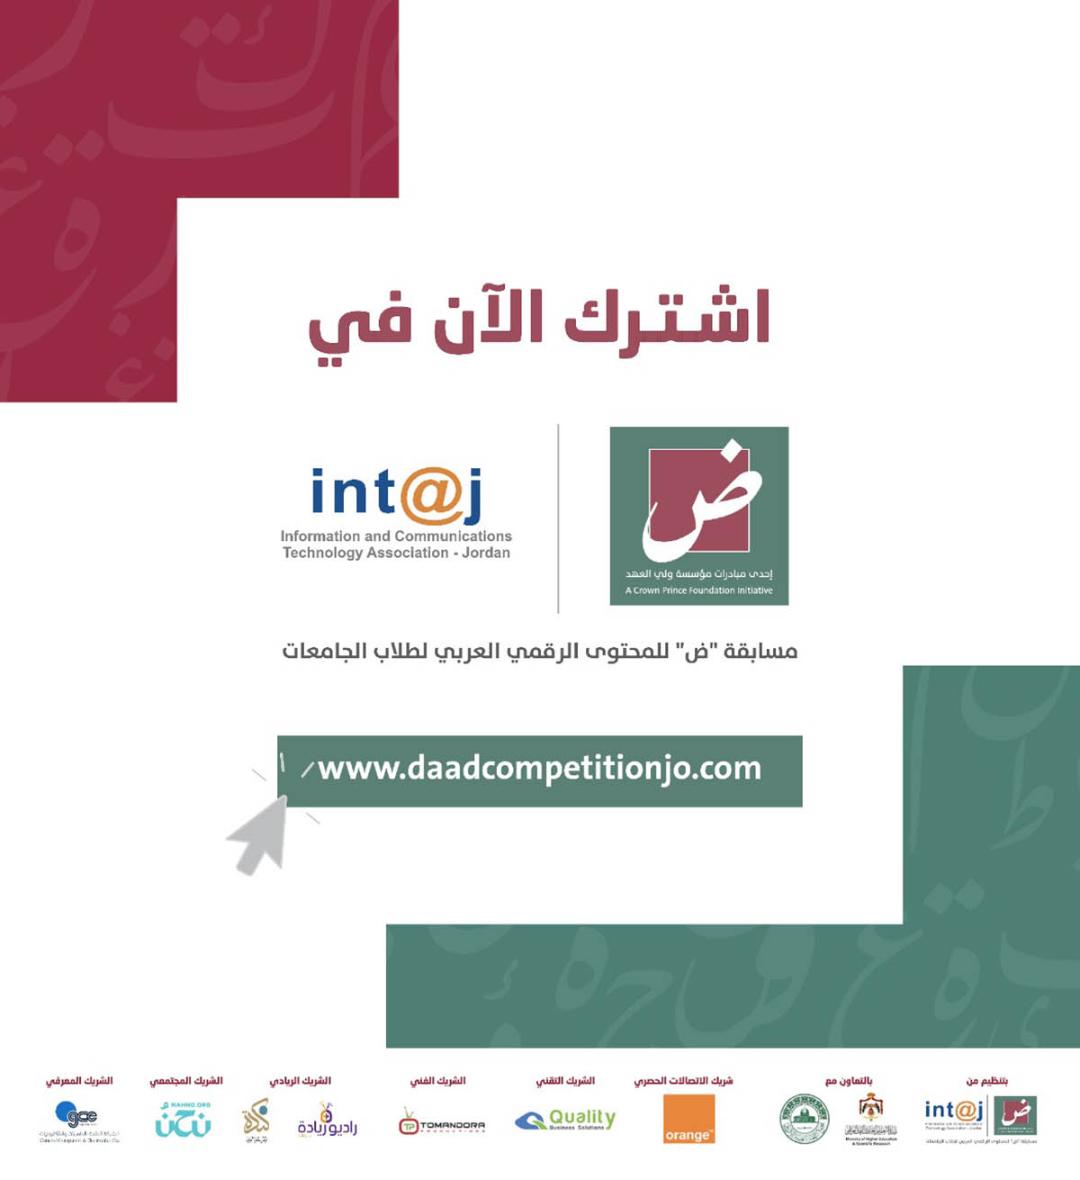 أورانج الأردن راعي الاتصالات الرسمي لمبادرة “ض” للمحتوى الرقمي العربي